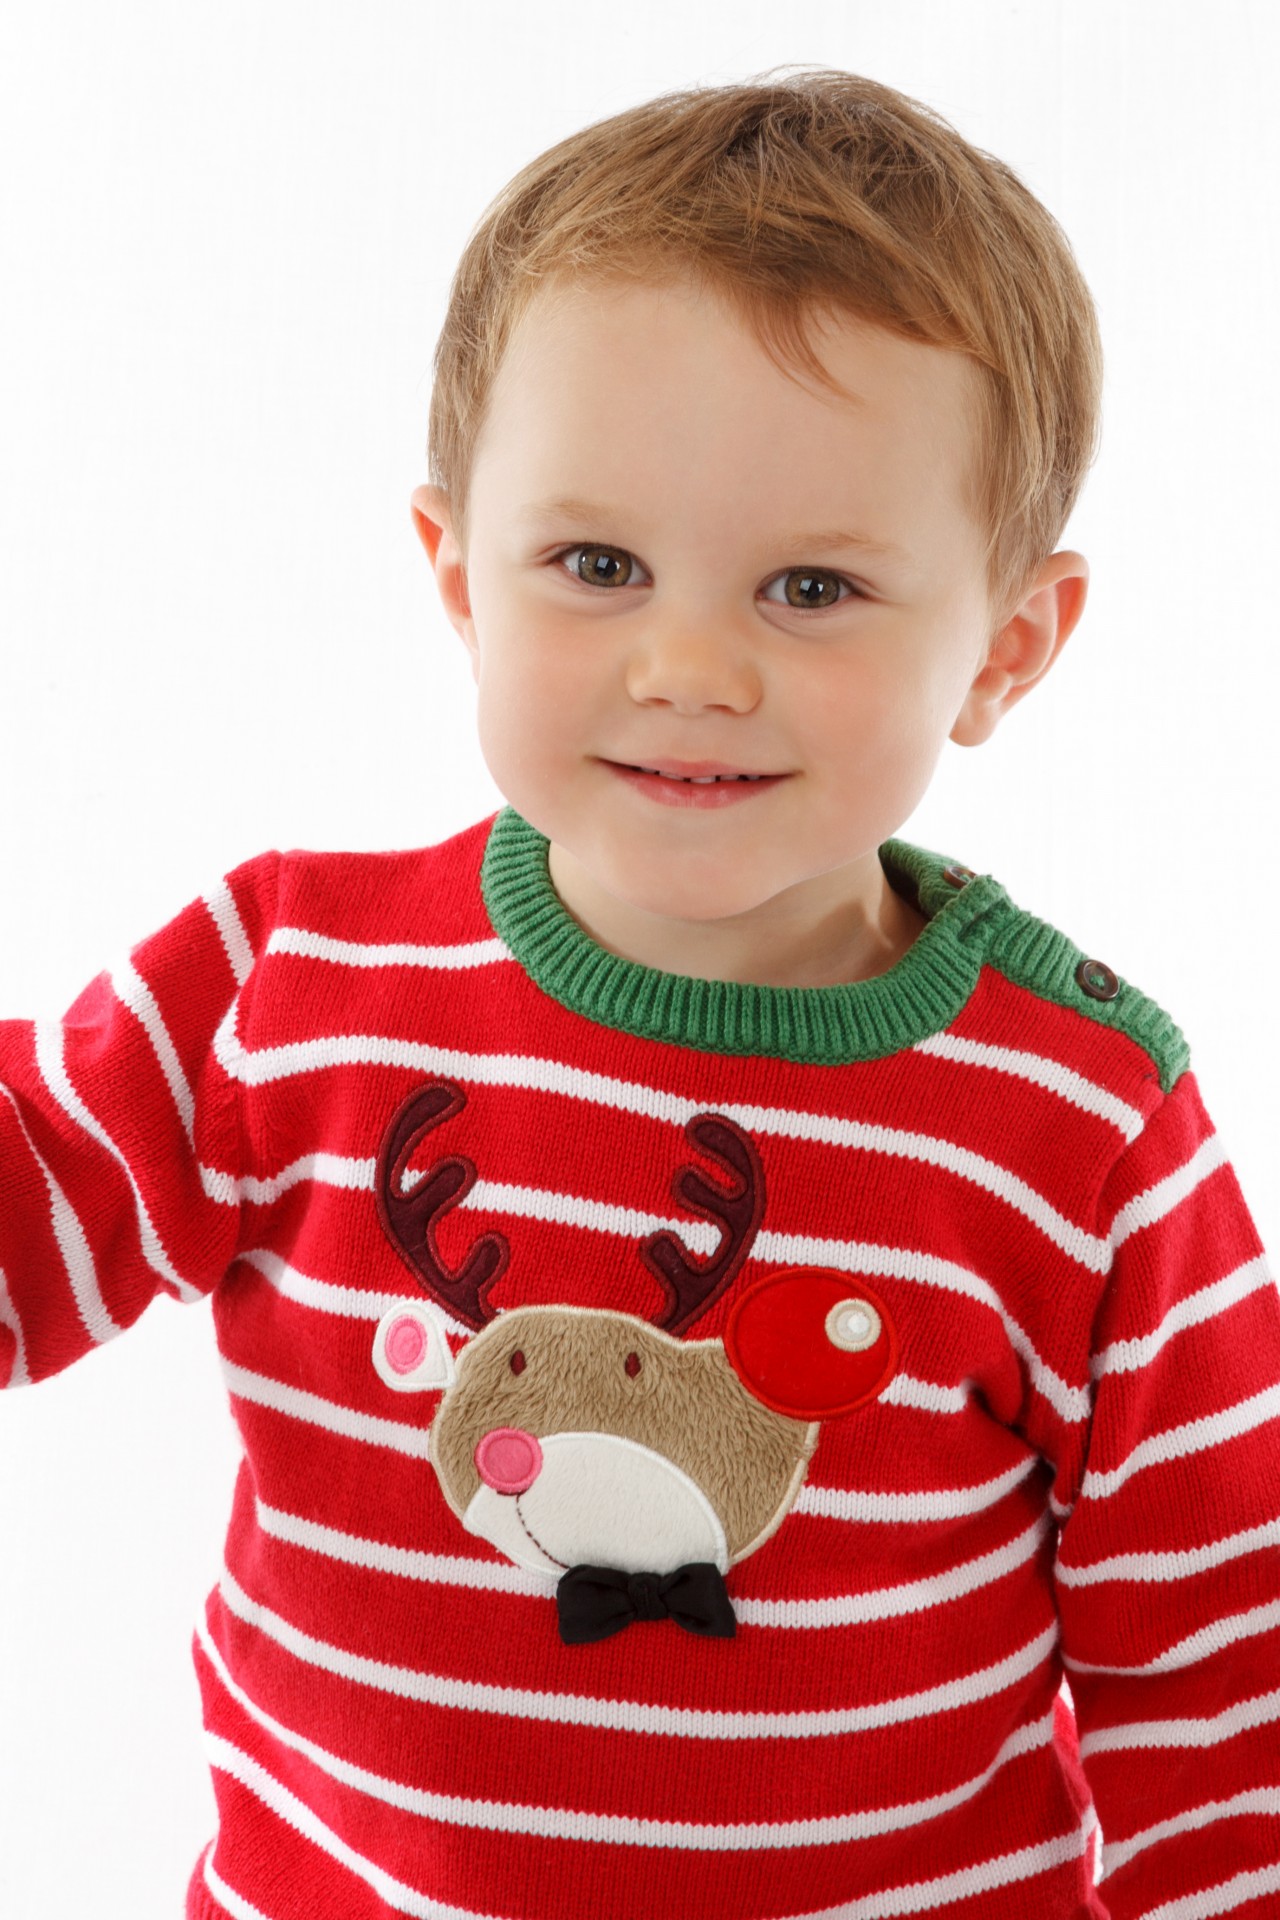 Little Boy In Christmas Sweater